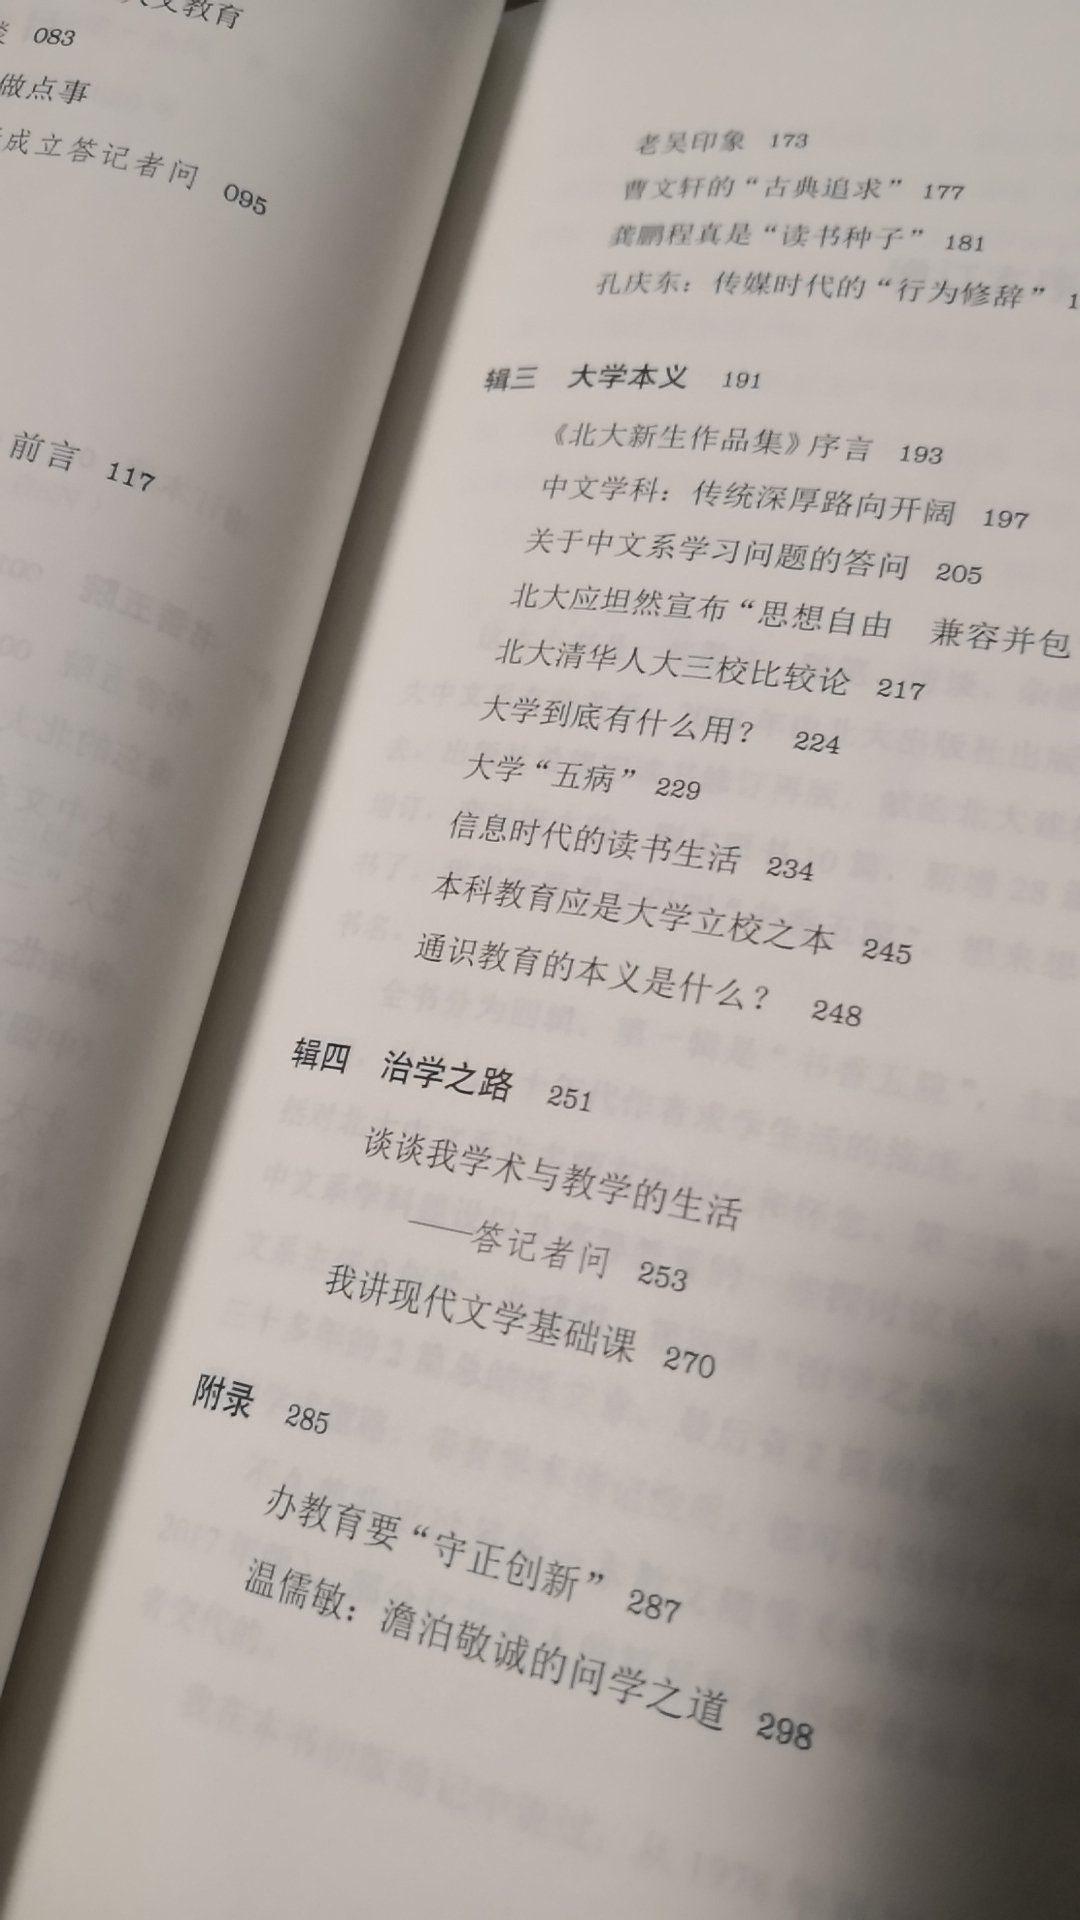 这是笫一次买温先生的书，从中可以，了解北大中文系的人与事，看出北大中文系学术面貌之一二。